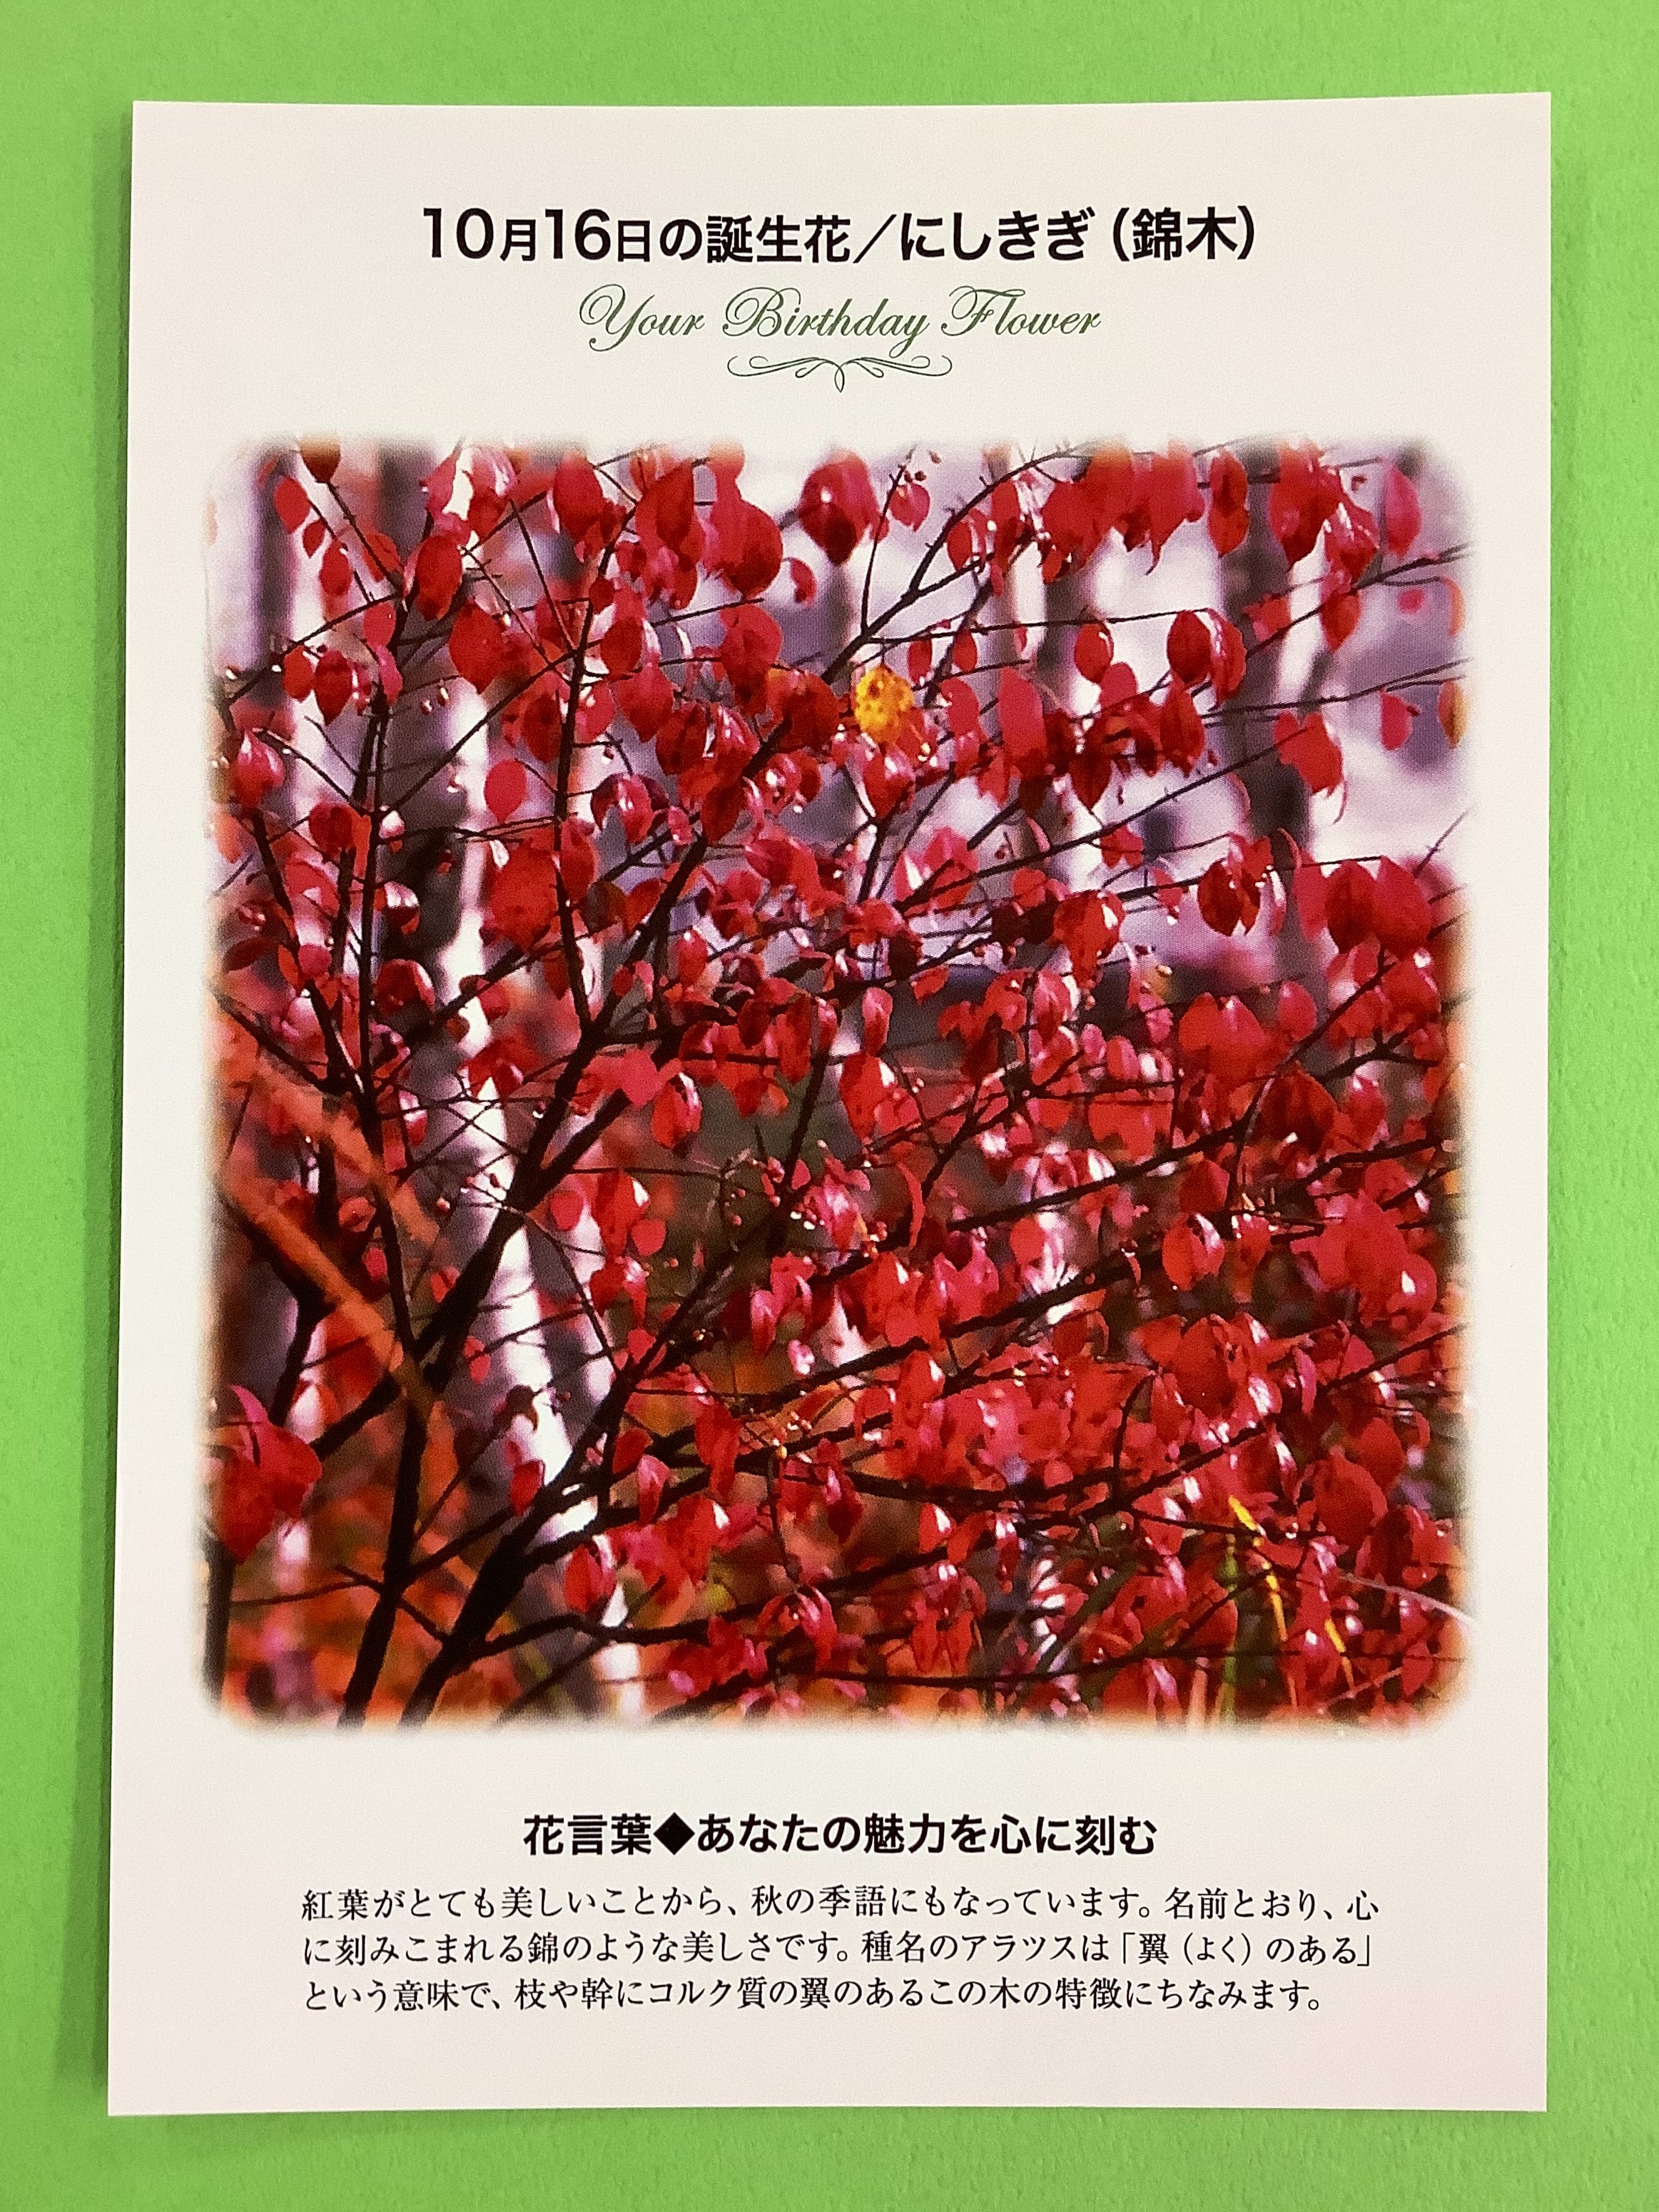 紀伊國屋書店 梅田本店 誕生花ポストカード 10 16の 誕生花 は 錦木 にしきぎ 紅葉 がとても美しいことから 秋の季語にもなっています 名前とおり 心に刻みこまれる錦のような美しさです 花言葉 は あなたの魅力を心に刻む 只今文具